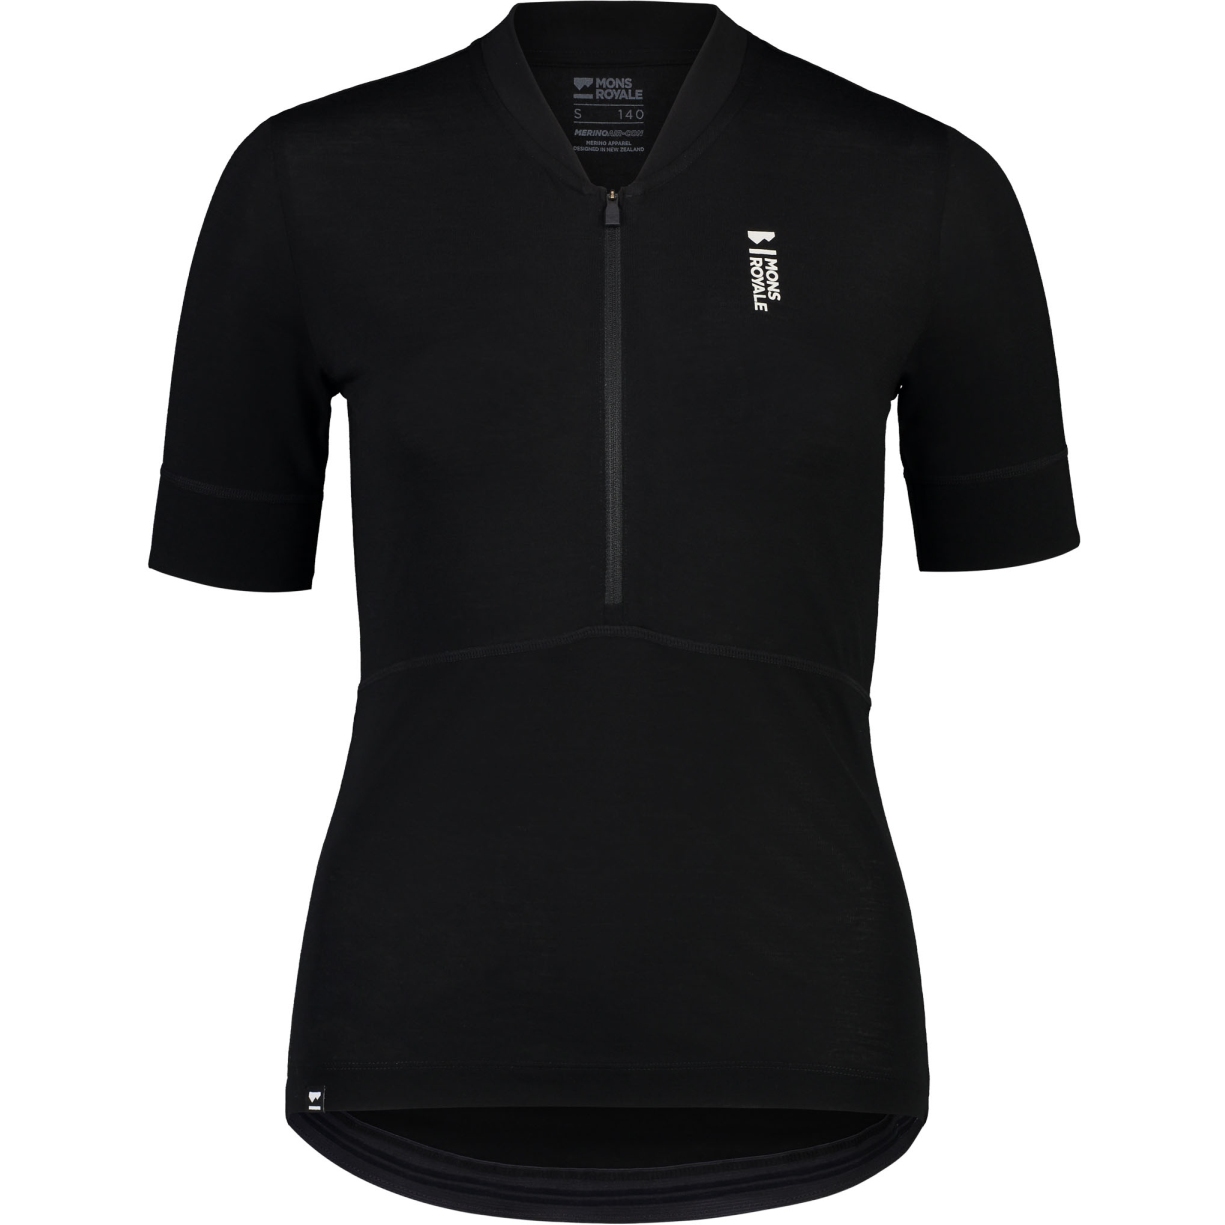 Produktbild von Mons Royale Cadence Half Zip T-Shirt Damen - schwarz